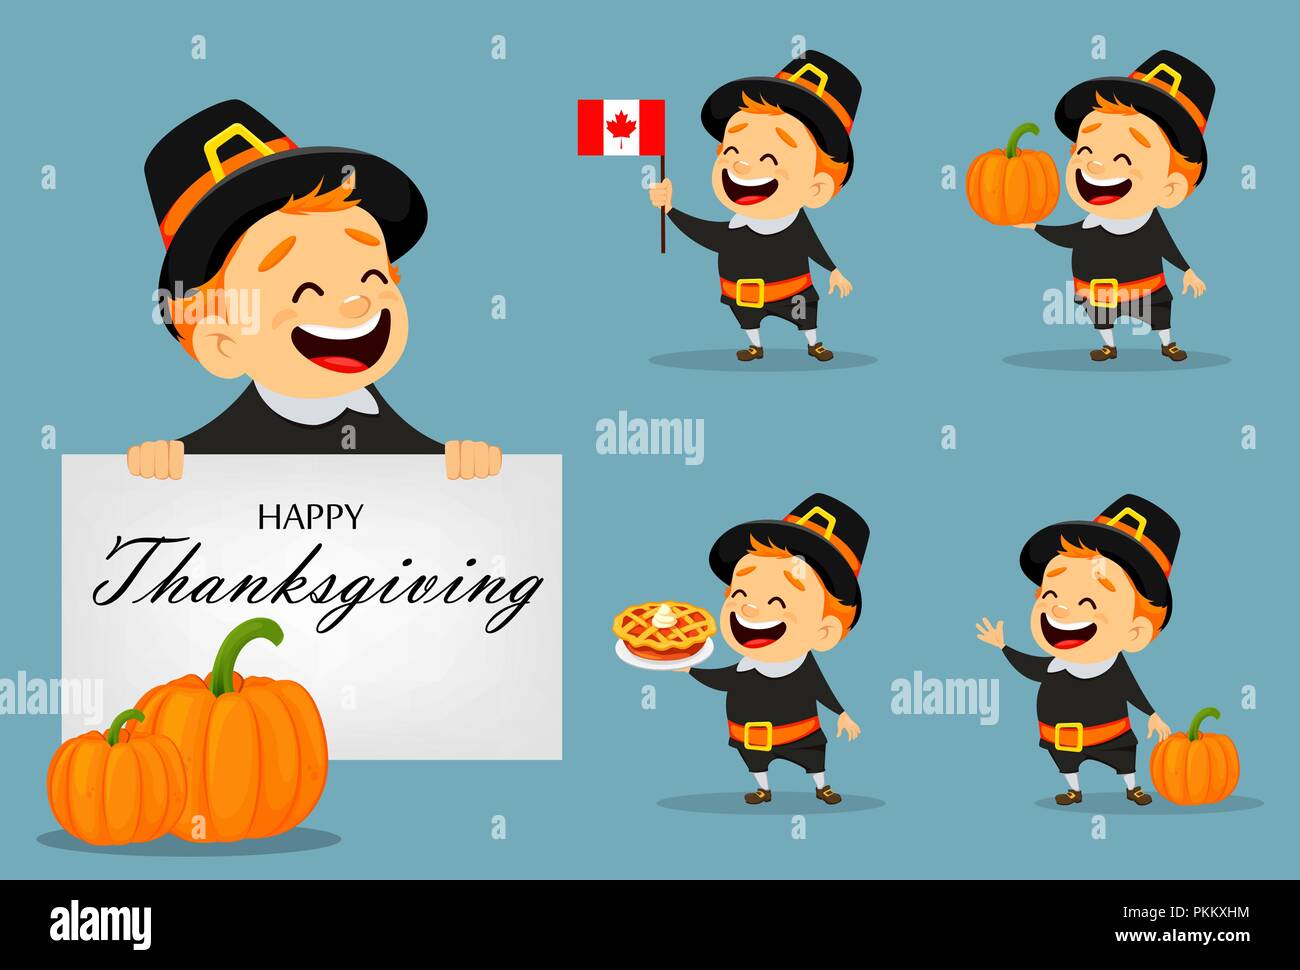 Thanksgiving Grußkarte mit kanadischen Mann mit einem Pilgrim Hut, von fünf Stellen darstellt. Lustige cartoon Charakter für den Urlaub. Vector Illustration Stock Vektor